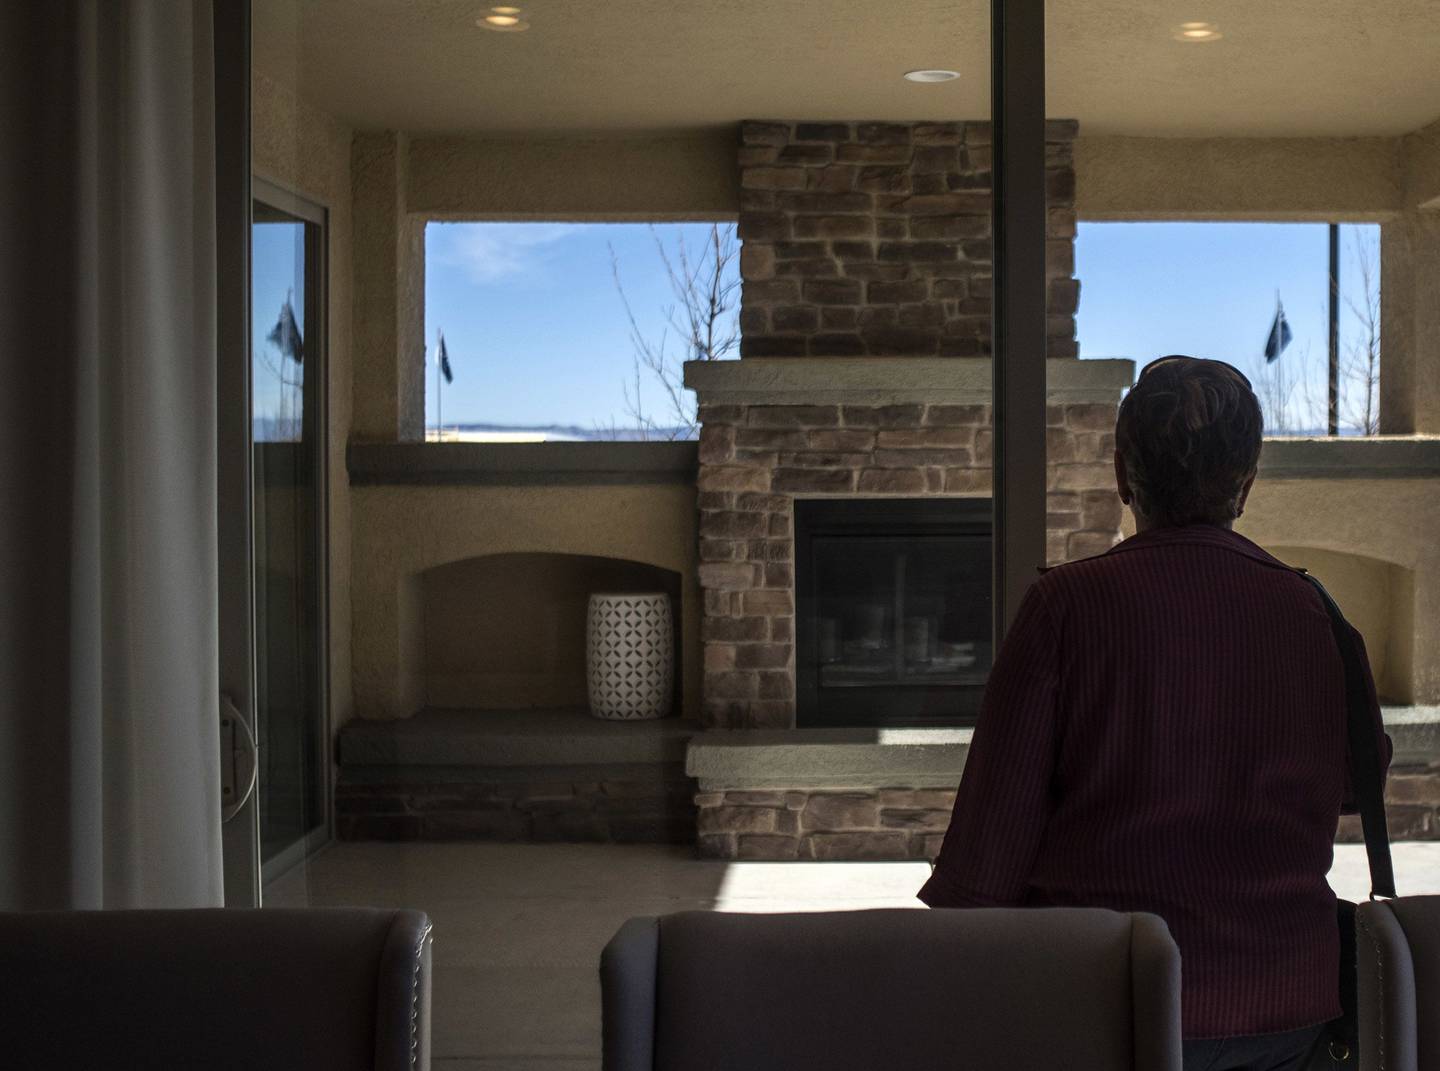 A prospective home buyer views a model home in Albuquerque, New Mexico